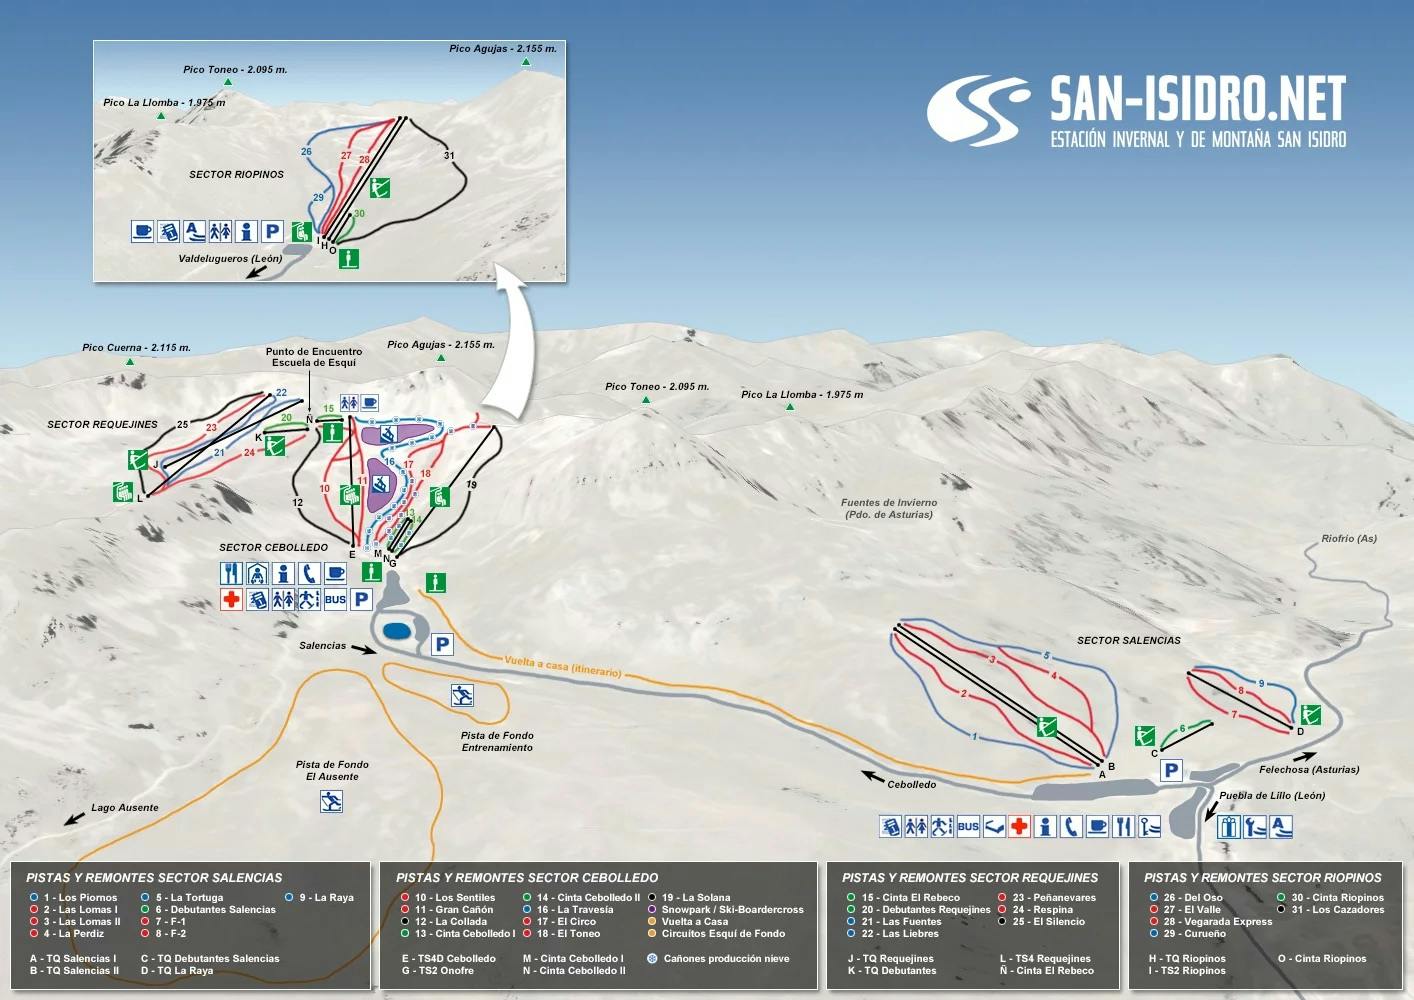 Copitos de Nieve - Estaciones de esquí, ski, snowboard - Mapa de la estación San Isidro